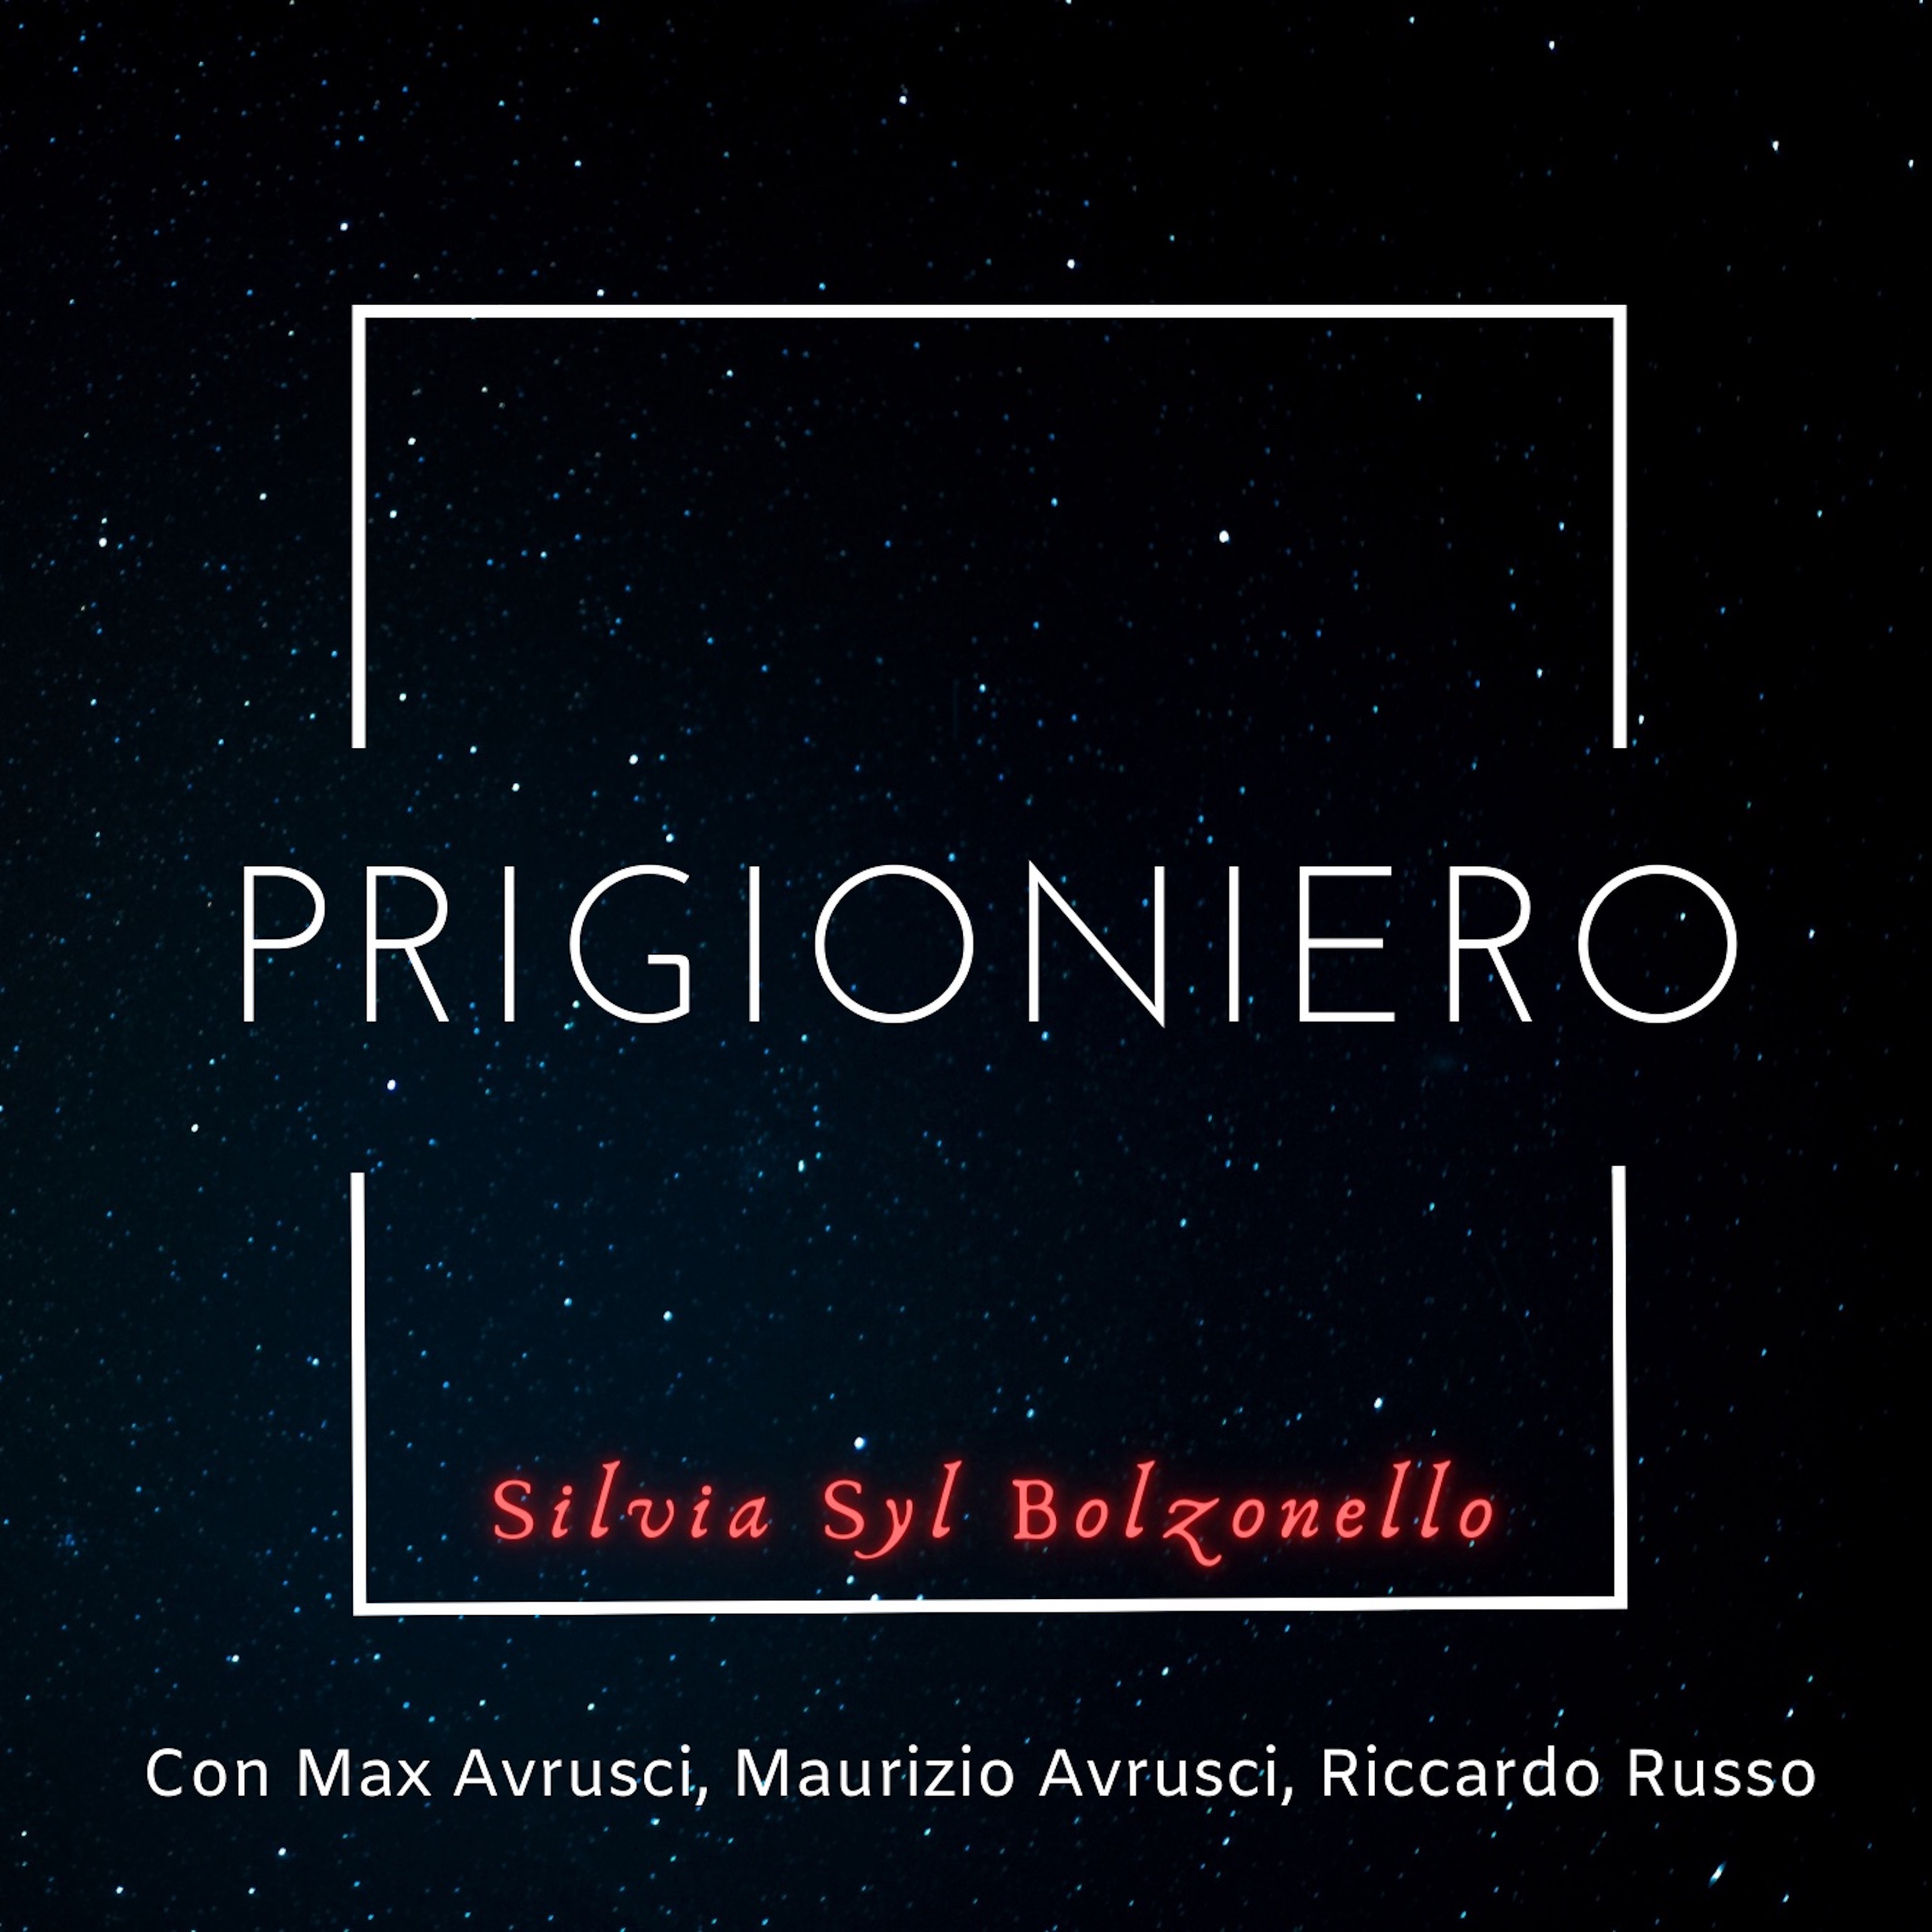 Nuovo singolo per Silvia Syl Bolzonello!!